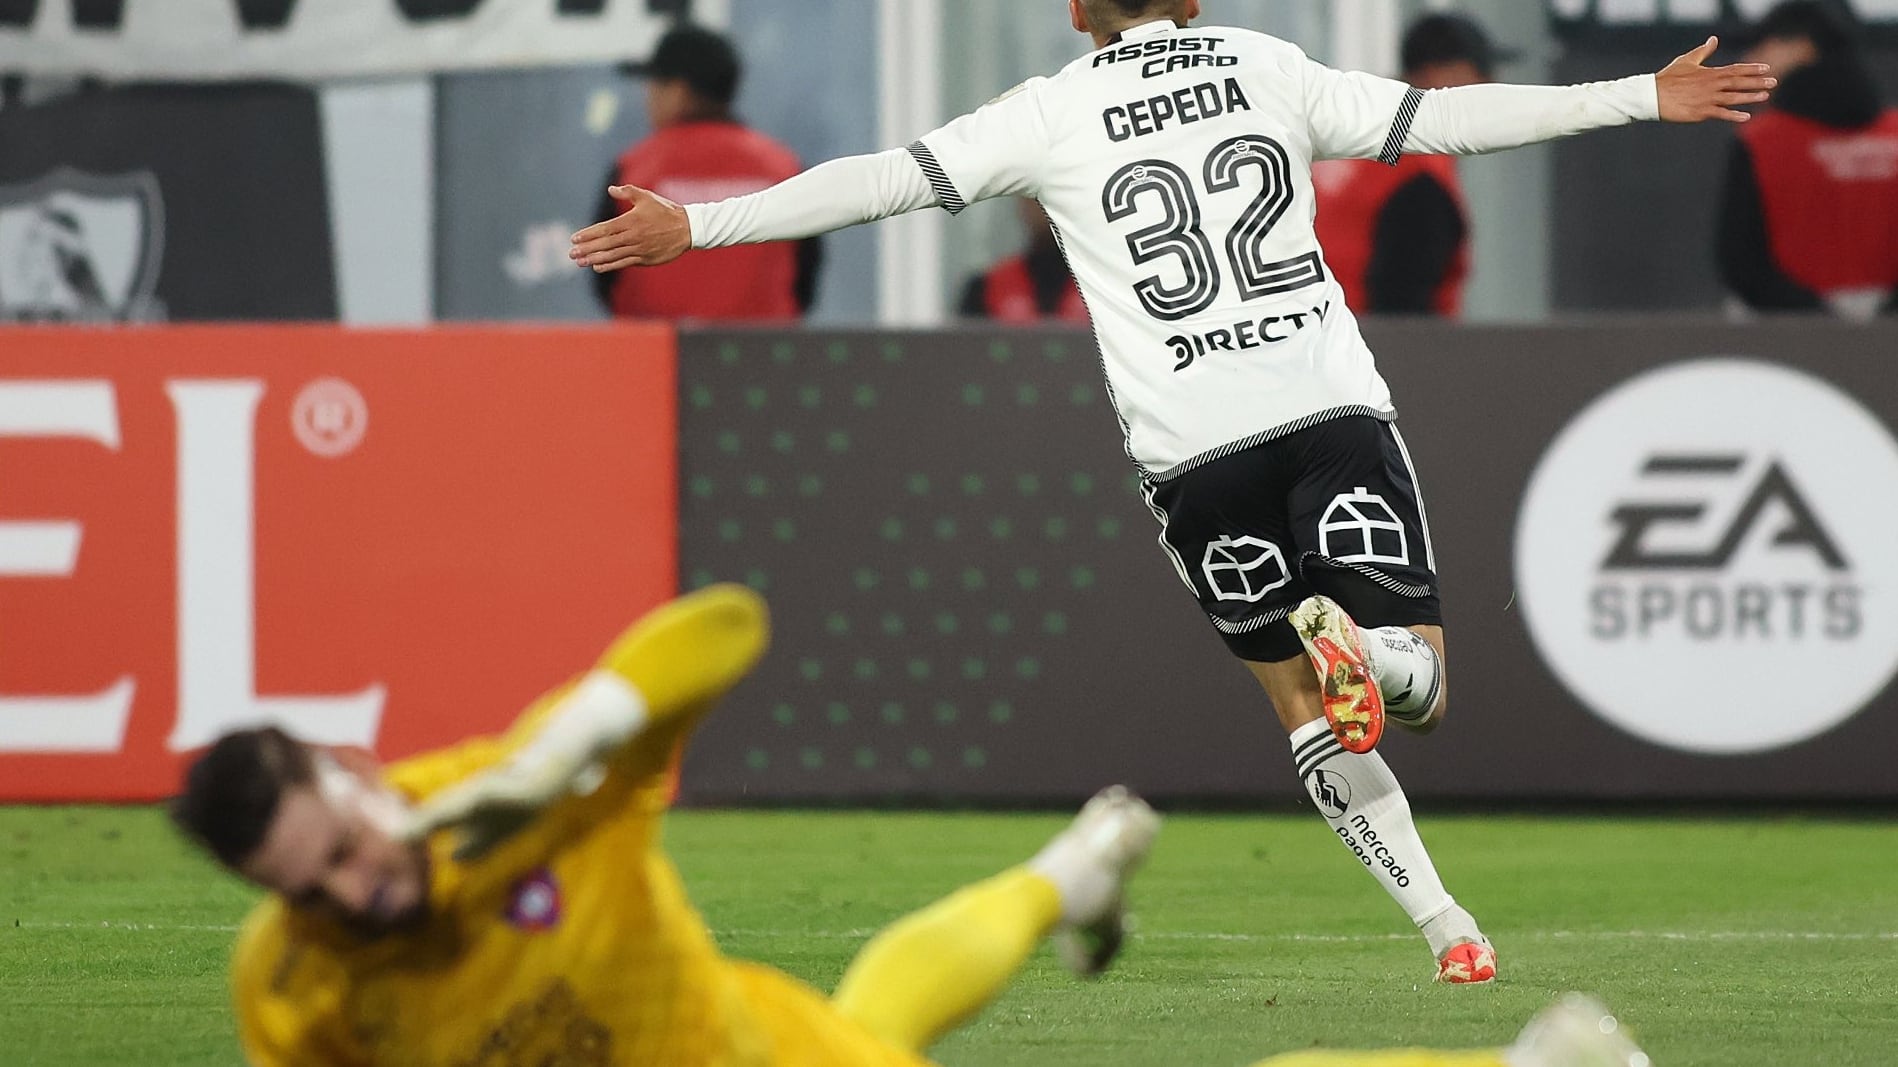 Con la victoria, el Cacique quedó primero en el Grupo A de la Copa Libertadores, luego del empate entre Alianza Lima y Fluminense (1-1).